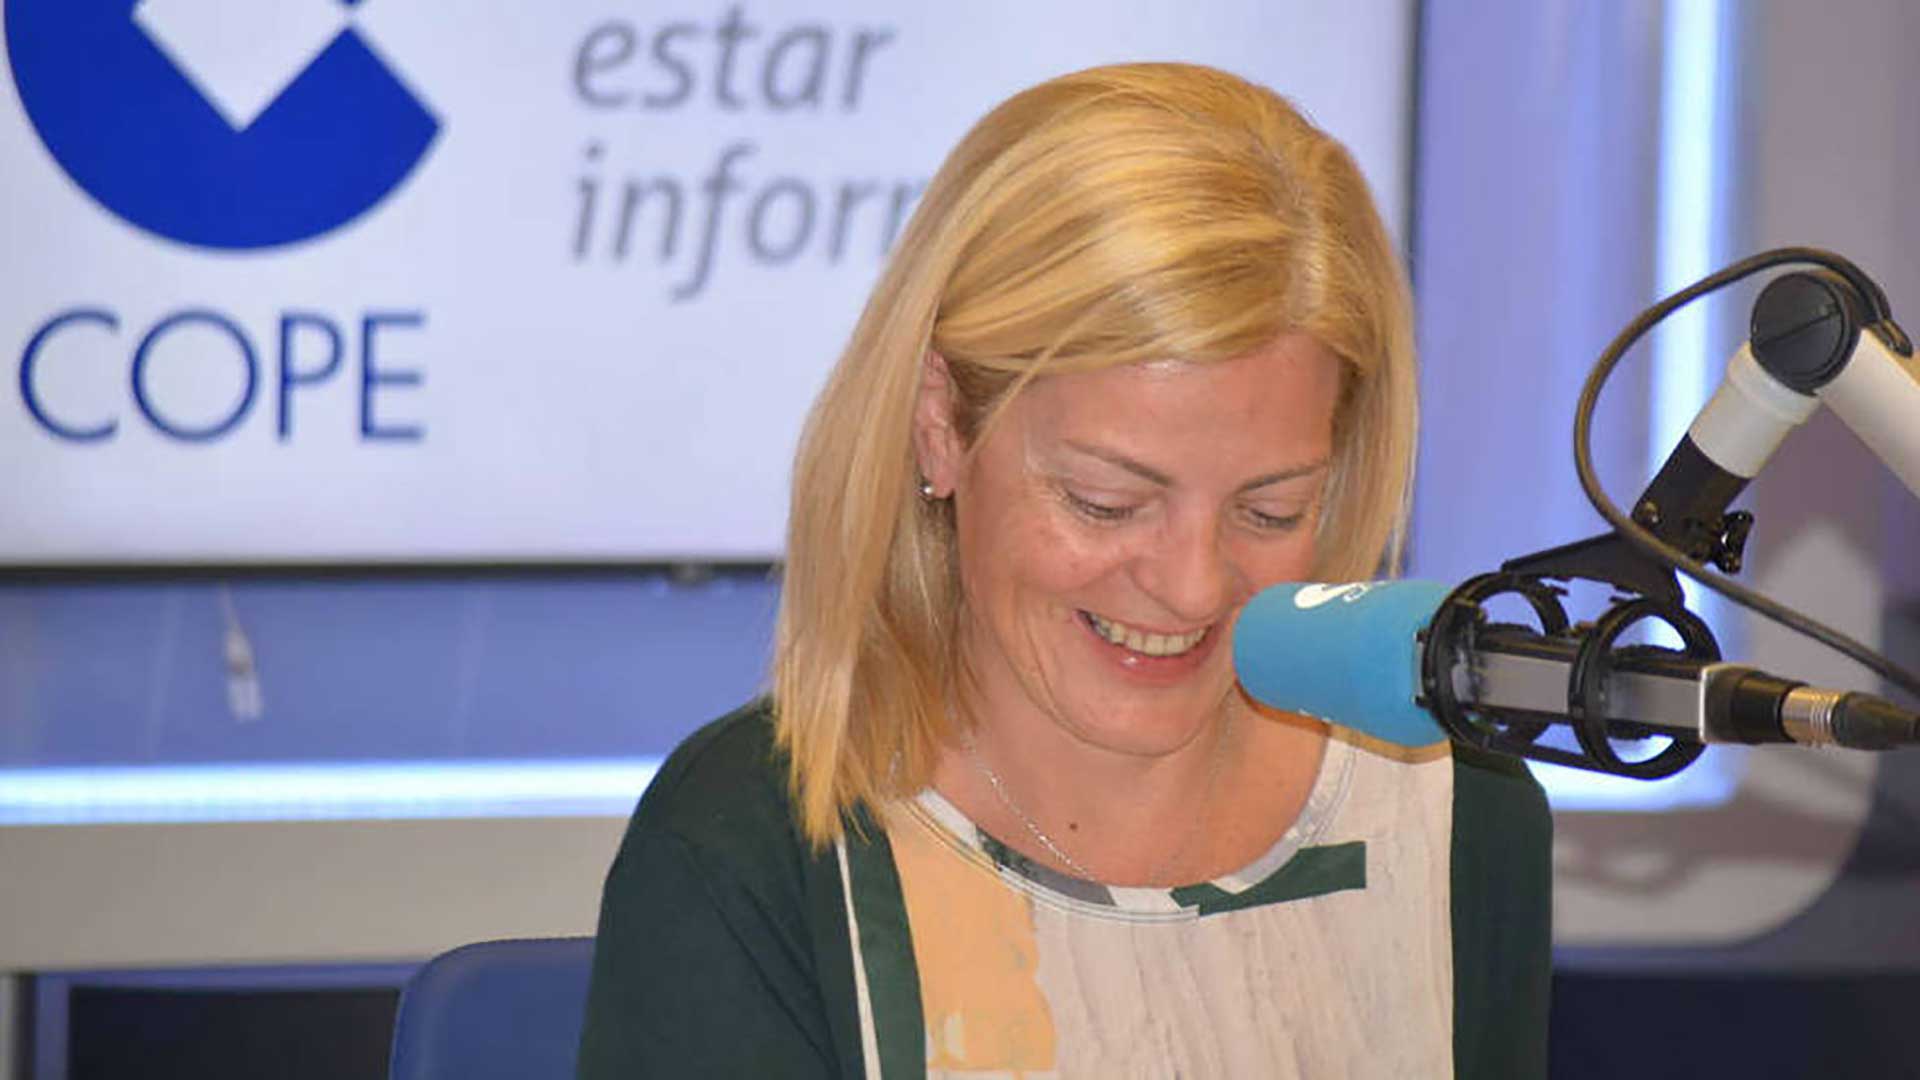 Muere la periodista radiofónica Paloma Tortajada a los 49 años